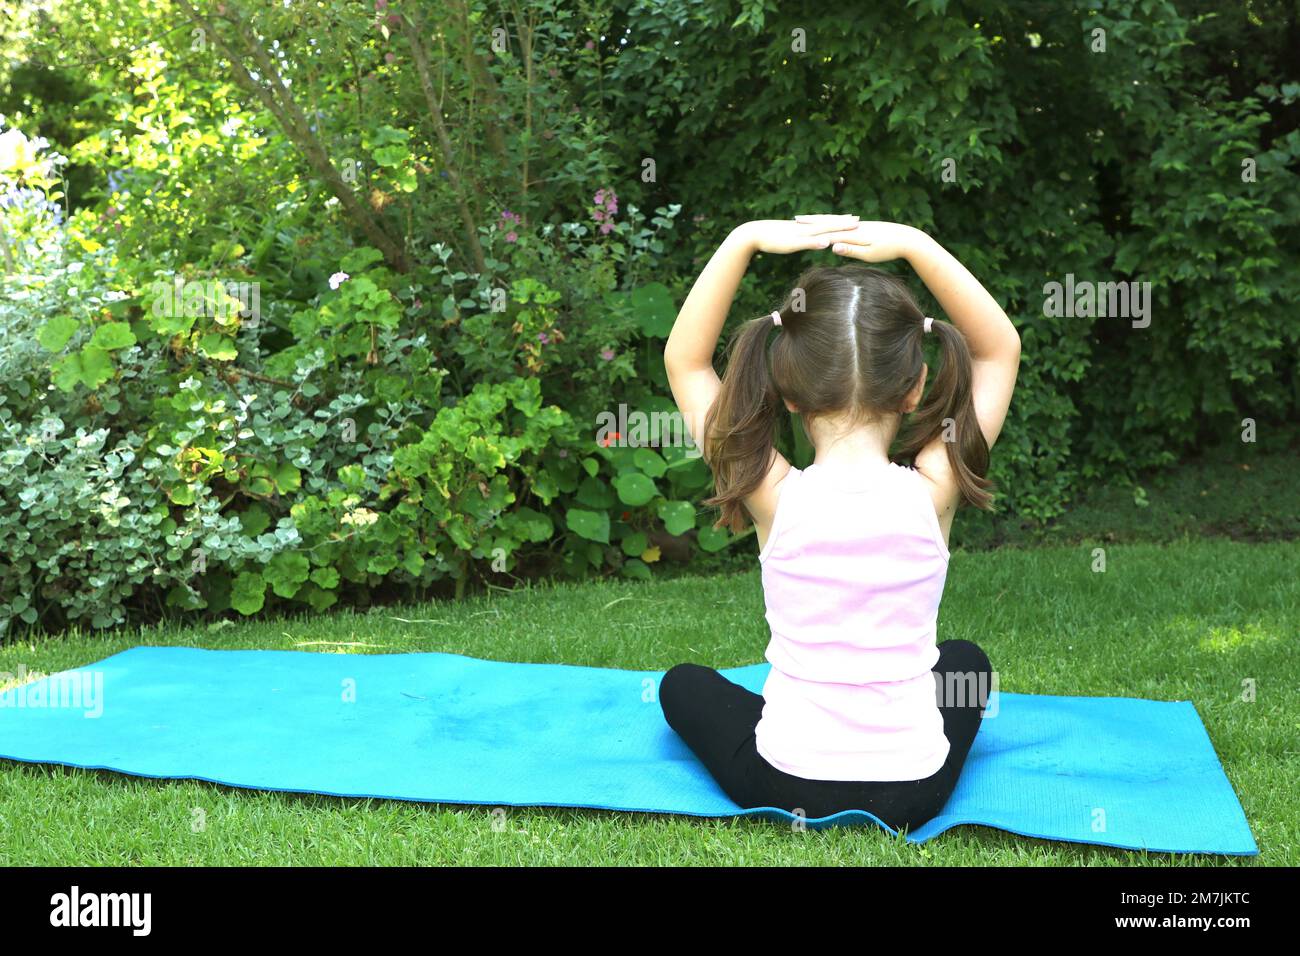 Une jeune fille de 7-10 ans faisant du yoga pose dans le jardin portant des picots sur un tapis de yoga bleu Banque D'Images